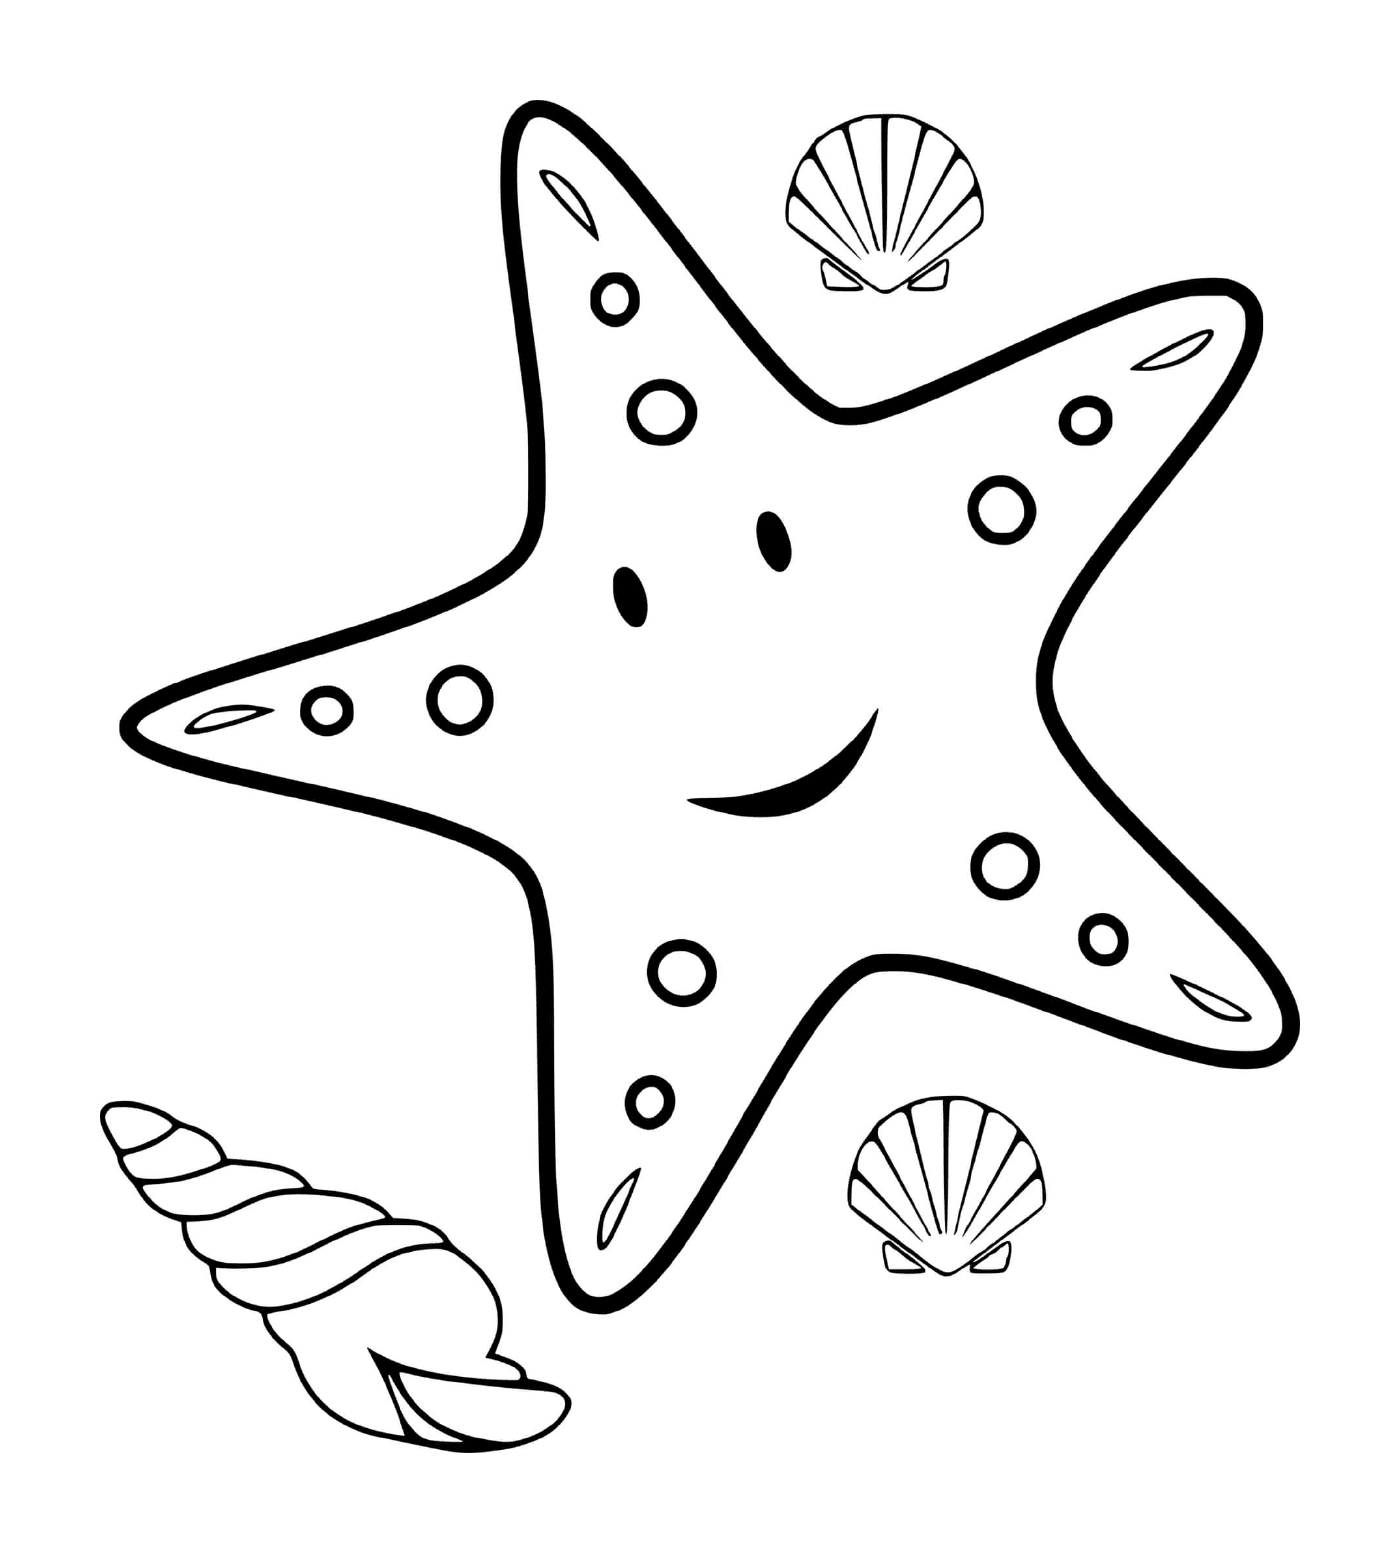  Estrella marina en el agua 